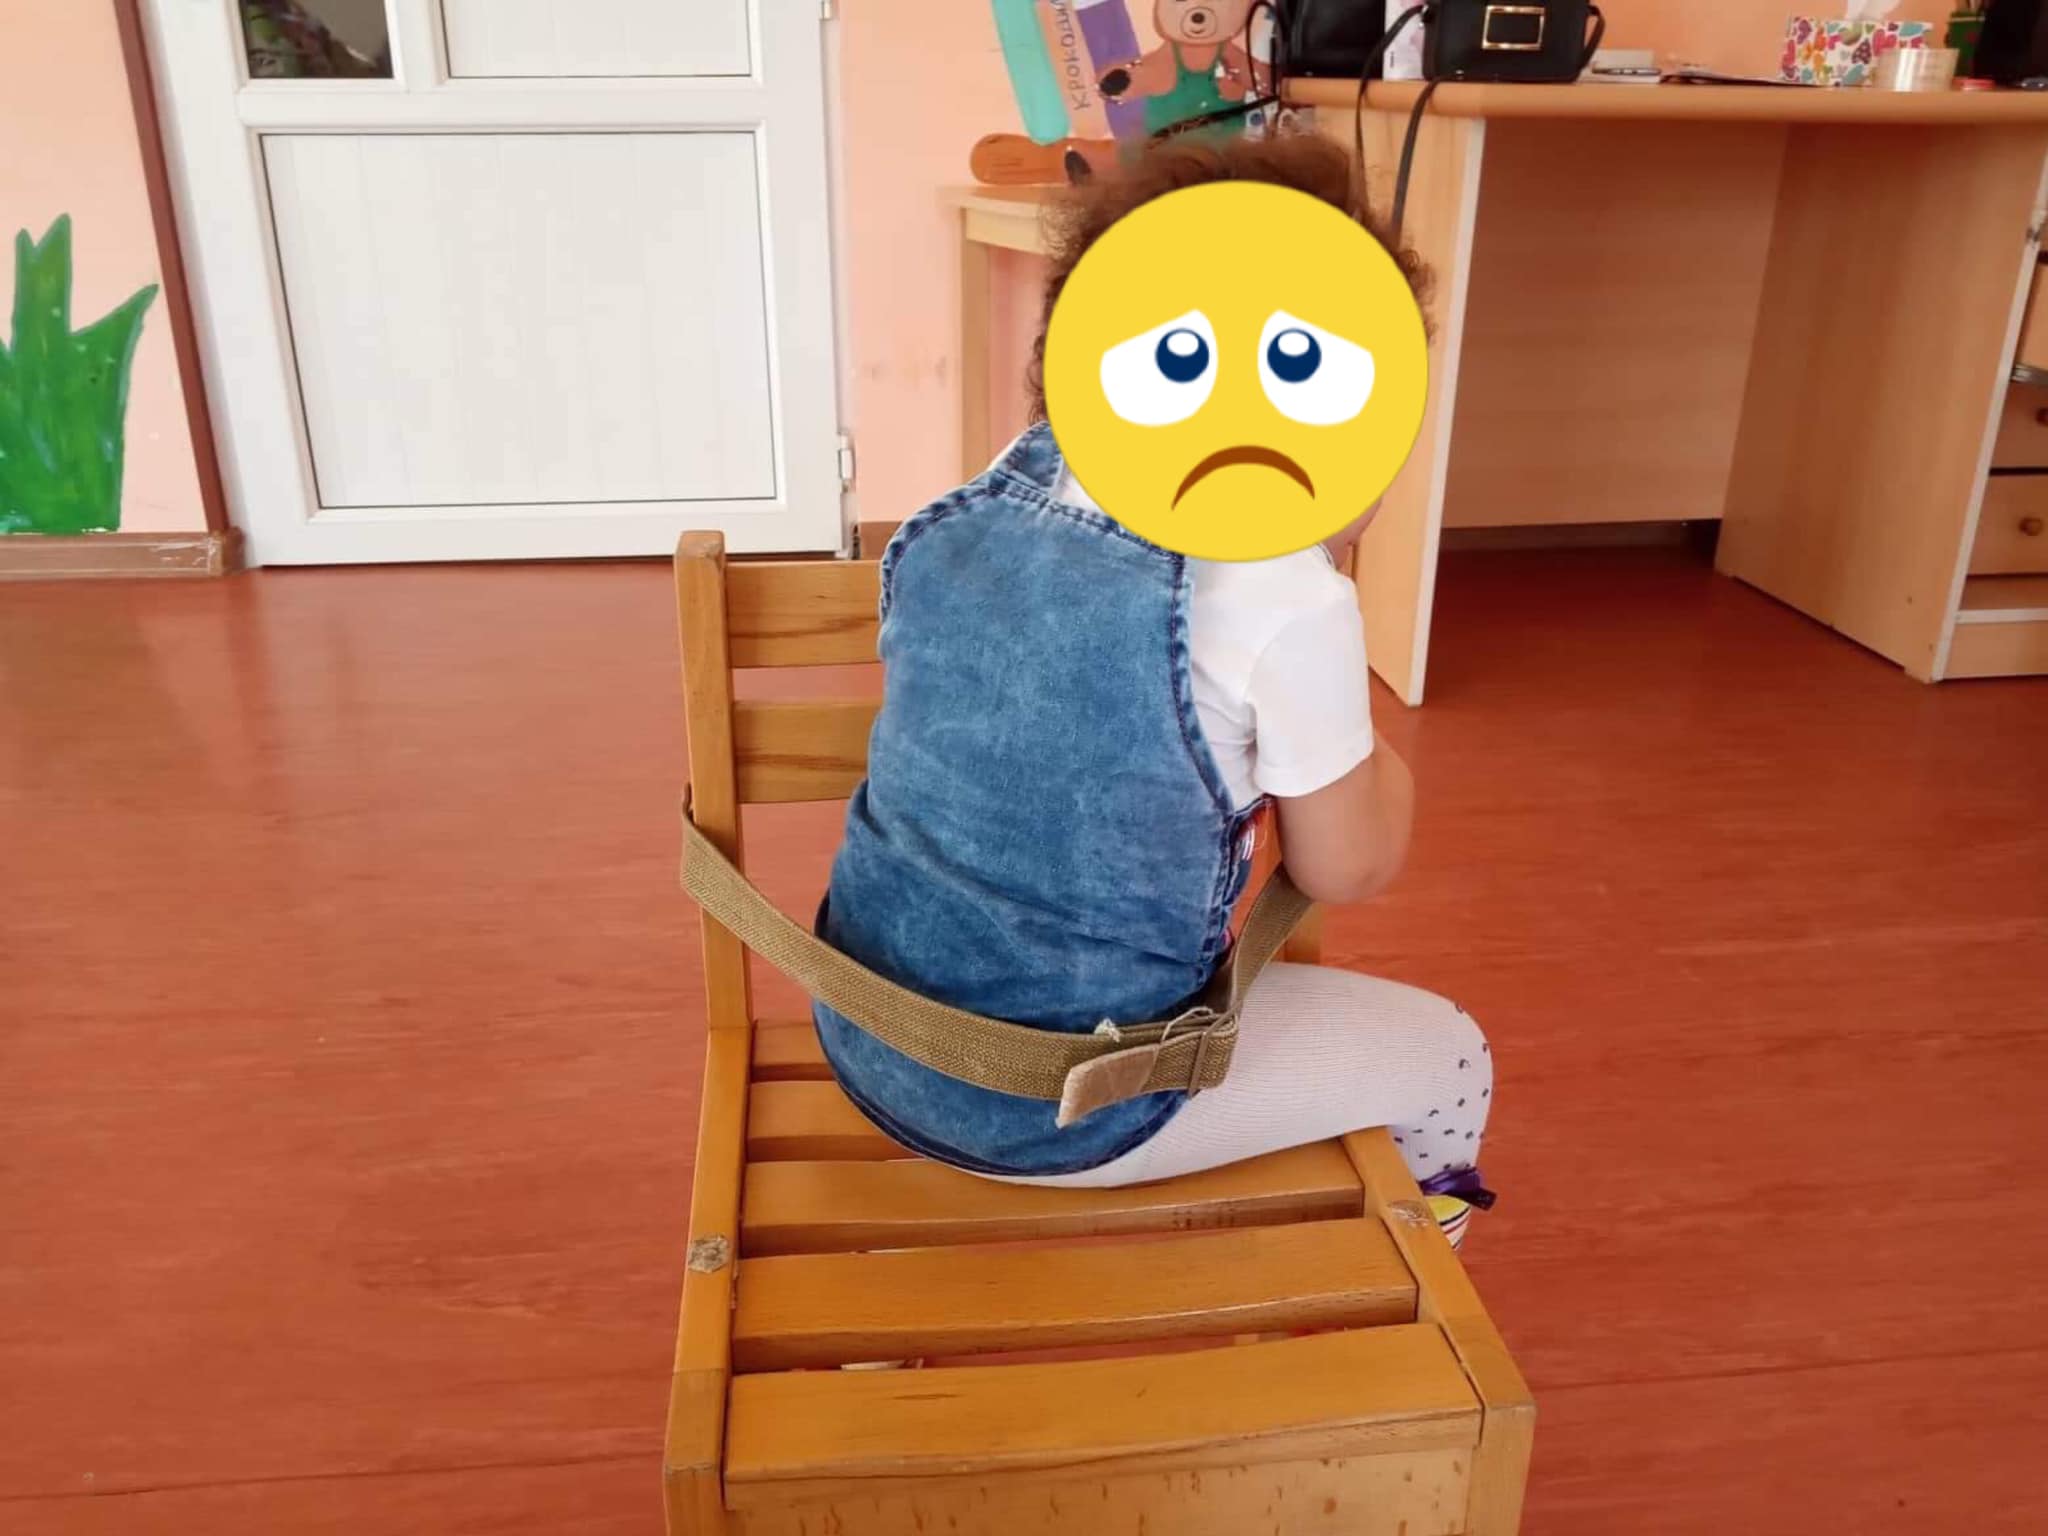 Երևանի մանկապարտեզներից մեկում երեխաներին կապել են աթոռներին. ֆեյսբուքյան օգտատերն ահազանգում է